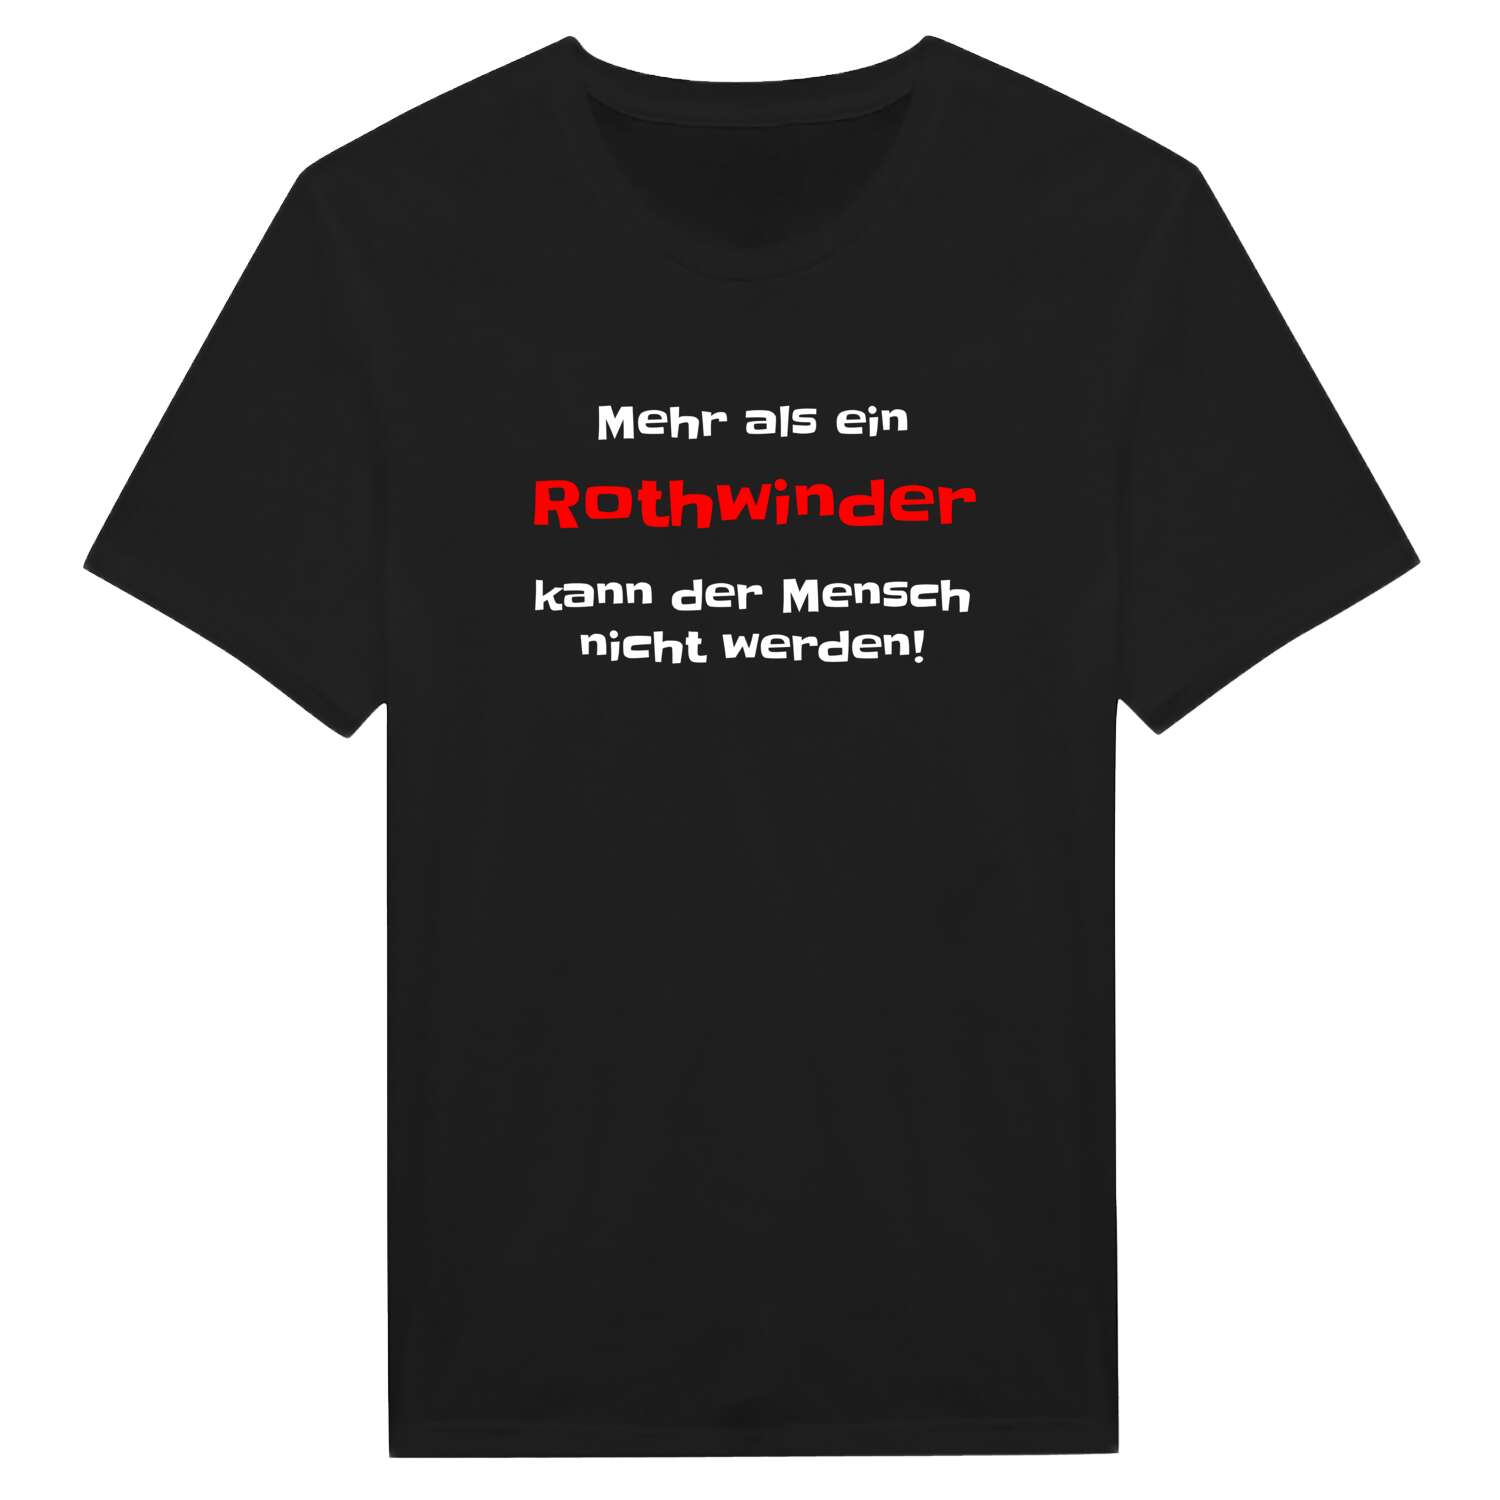 Rothwind T-Shirt »Mehr als ein«